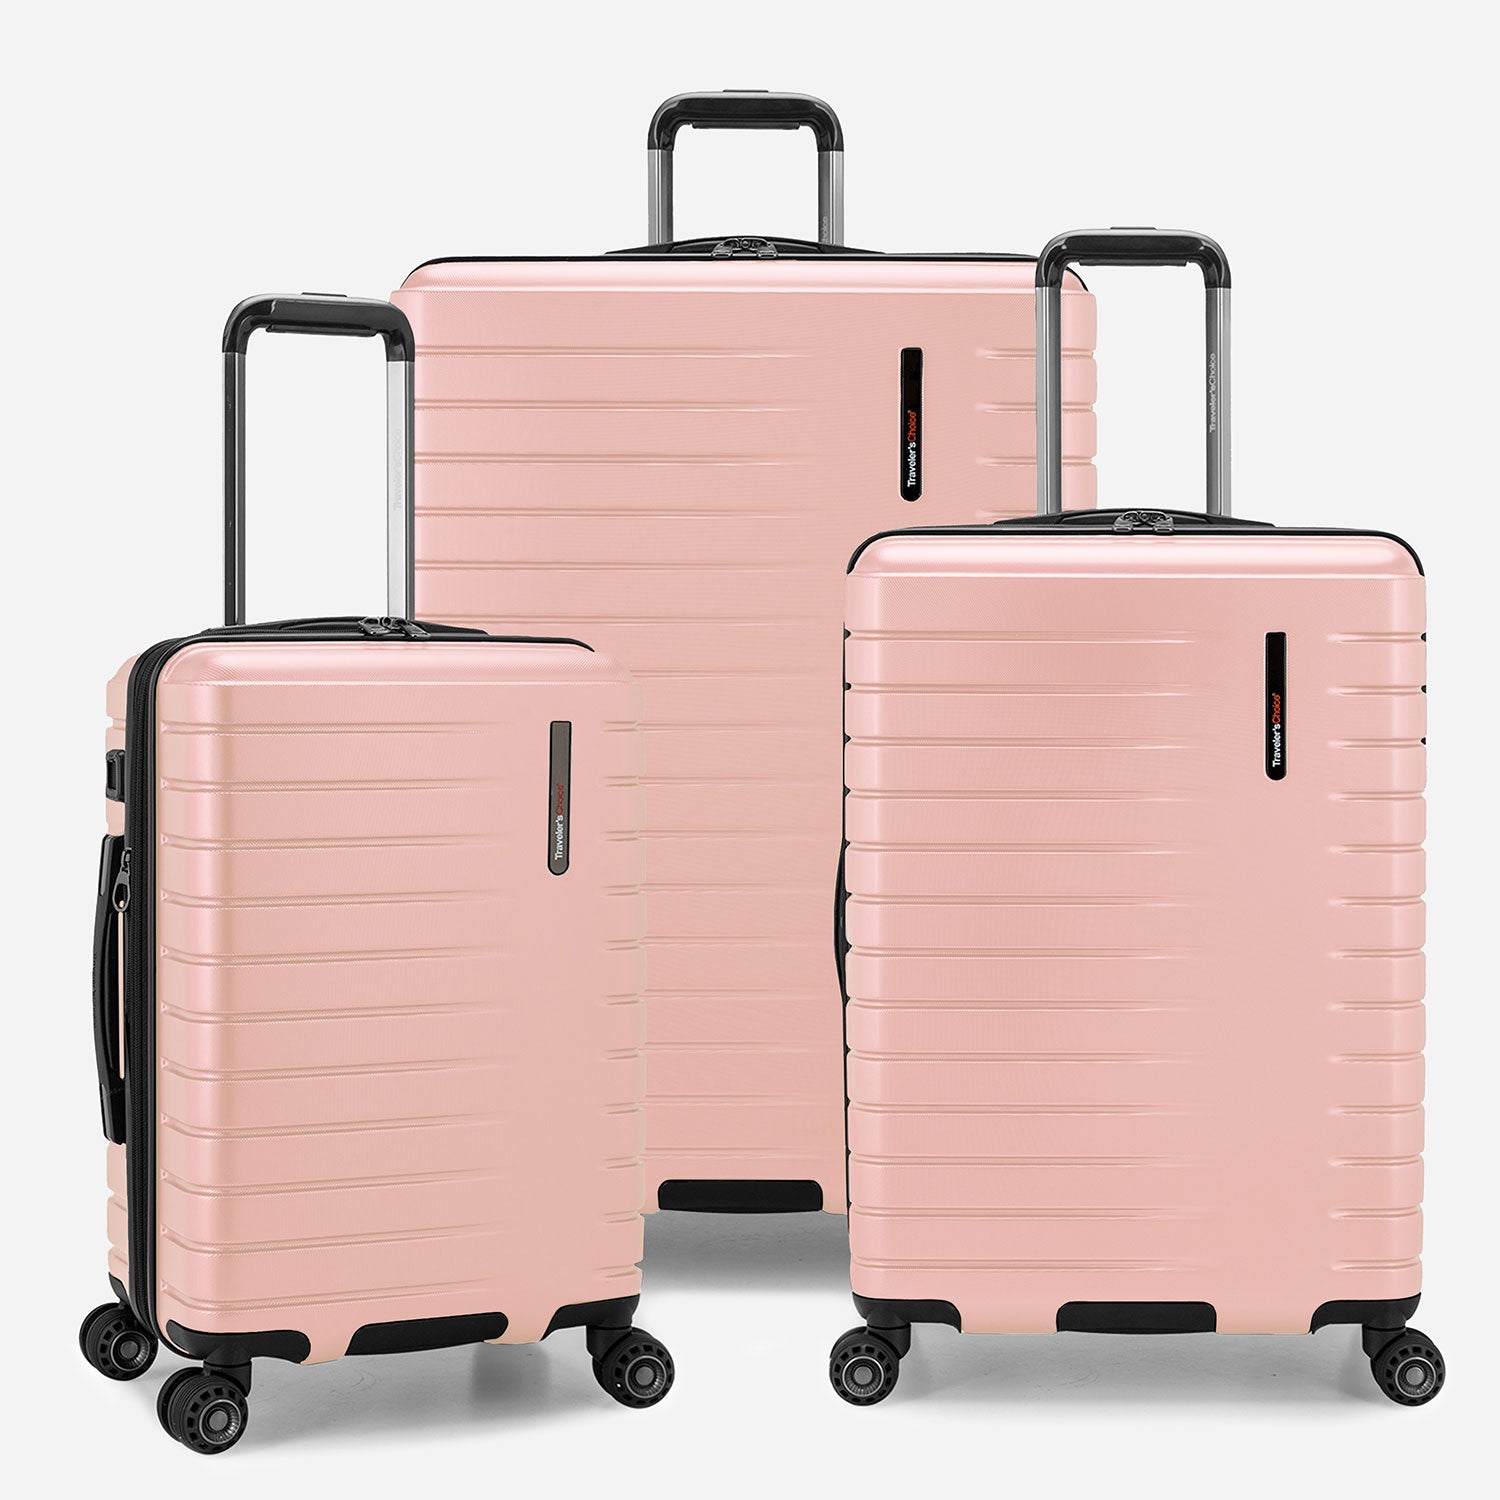 Traveler's Choice - Award Winning Luggage, Suitcase, Trunk Luggage